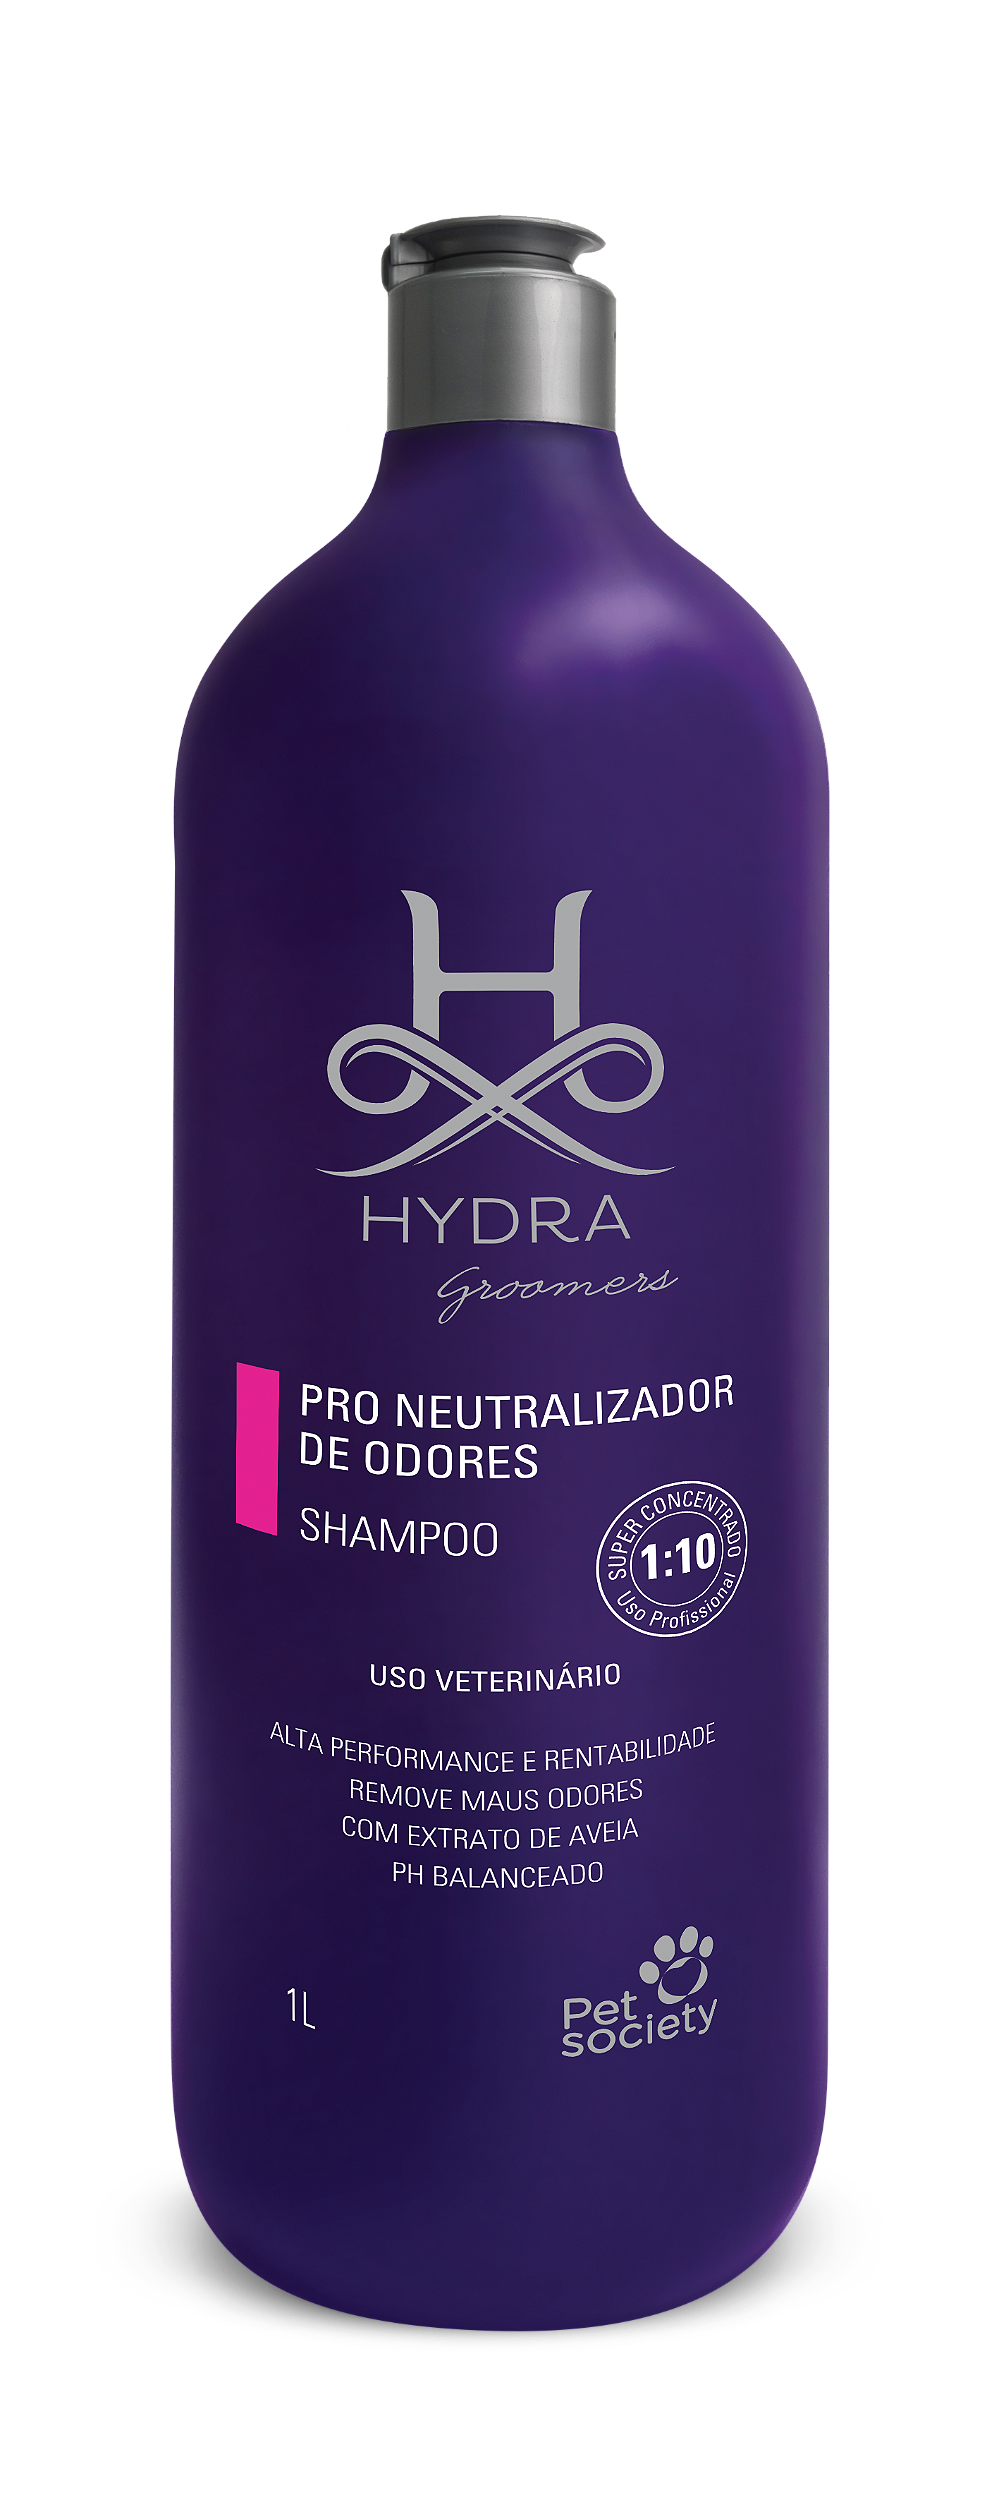 Shampoo Hydra PRO Neutralizador de Odores - Pet Here